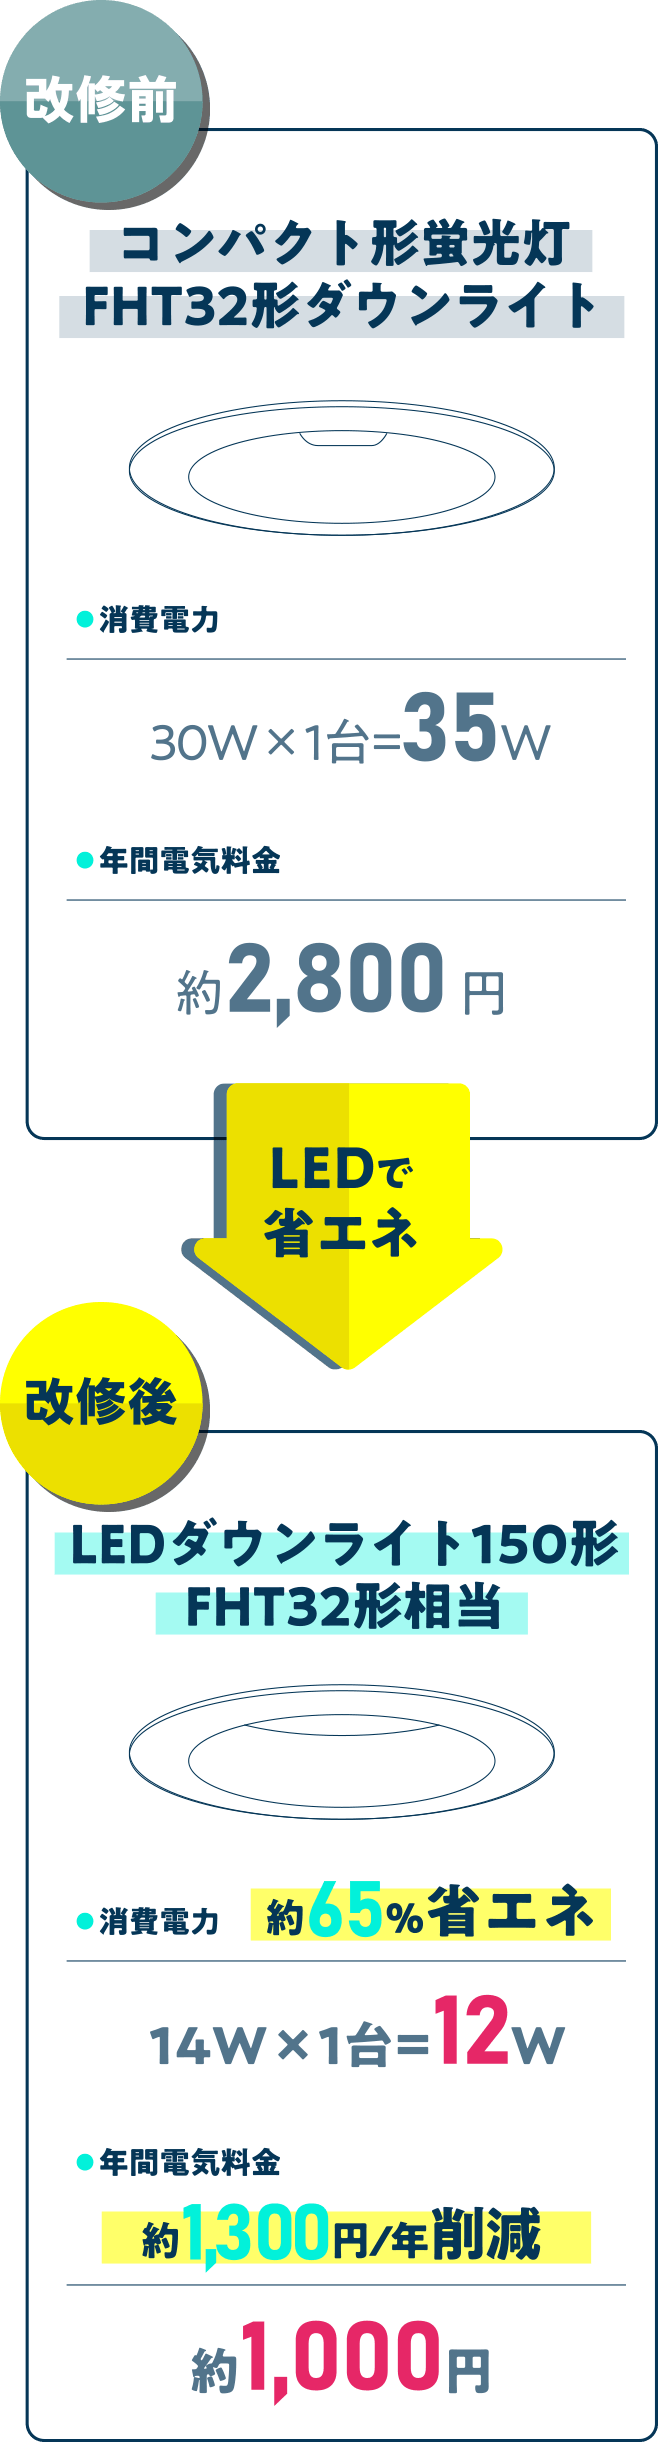 コンパクト形蛍光灯FHT32形ダウンライト → LEDダウンライト150形FHT32形相当　年間電気料金約1,300円/ 年削減